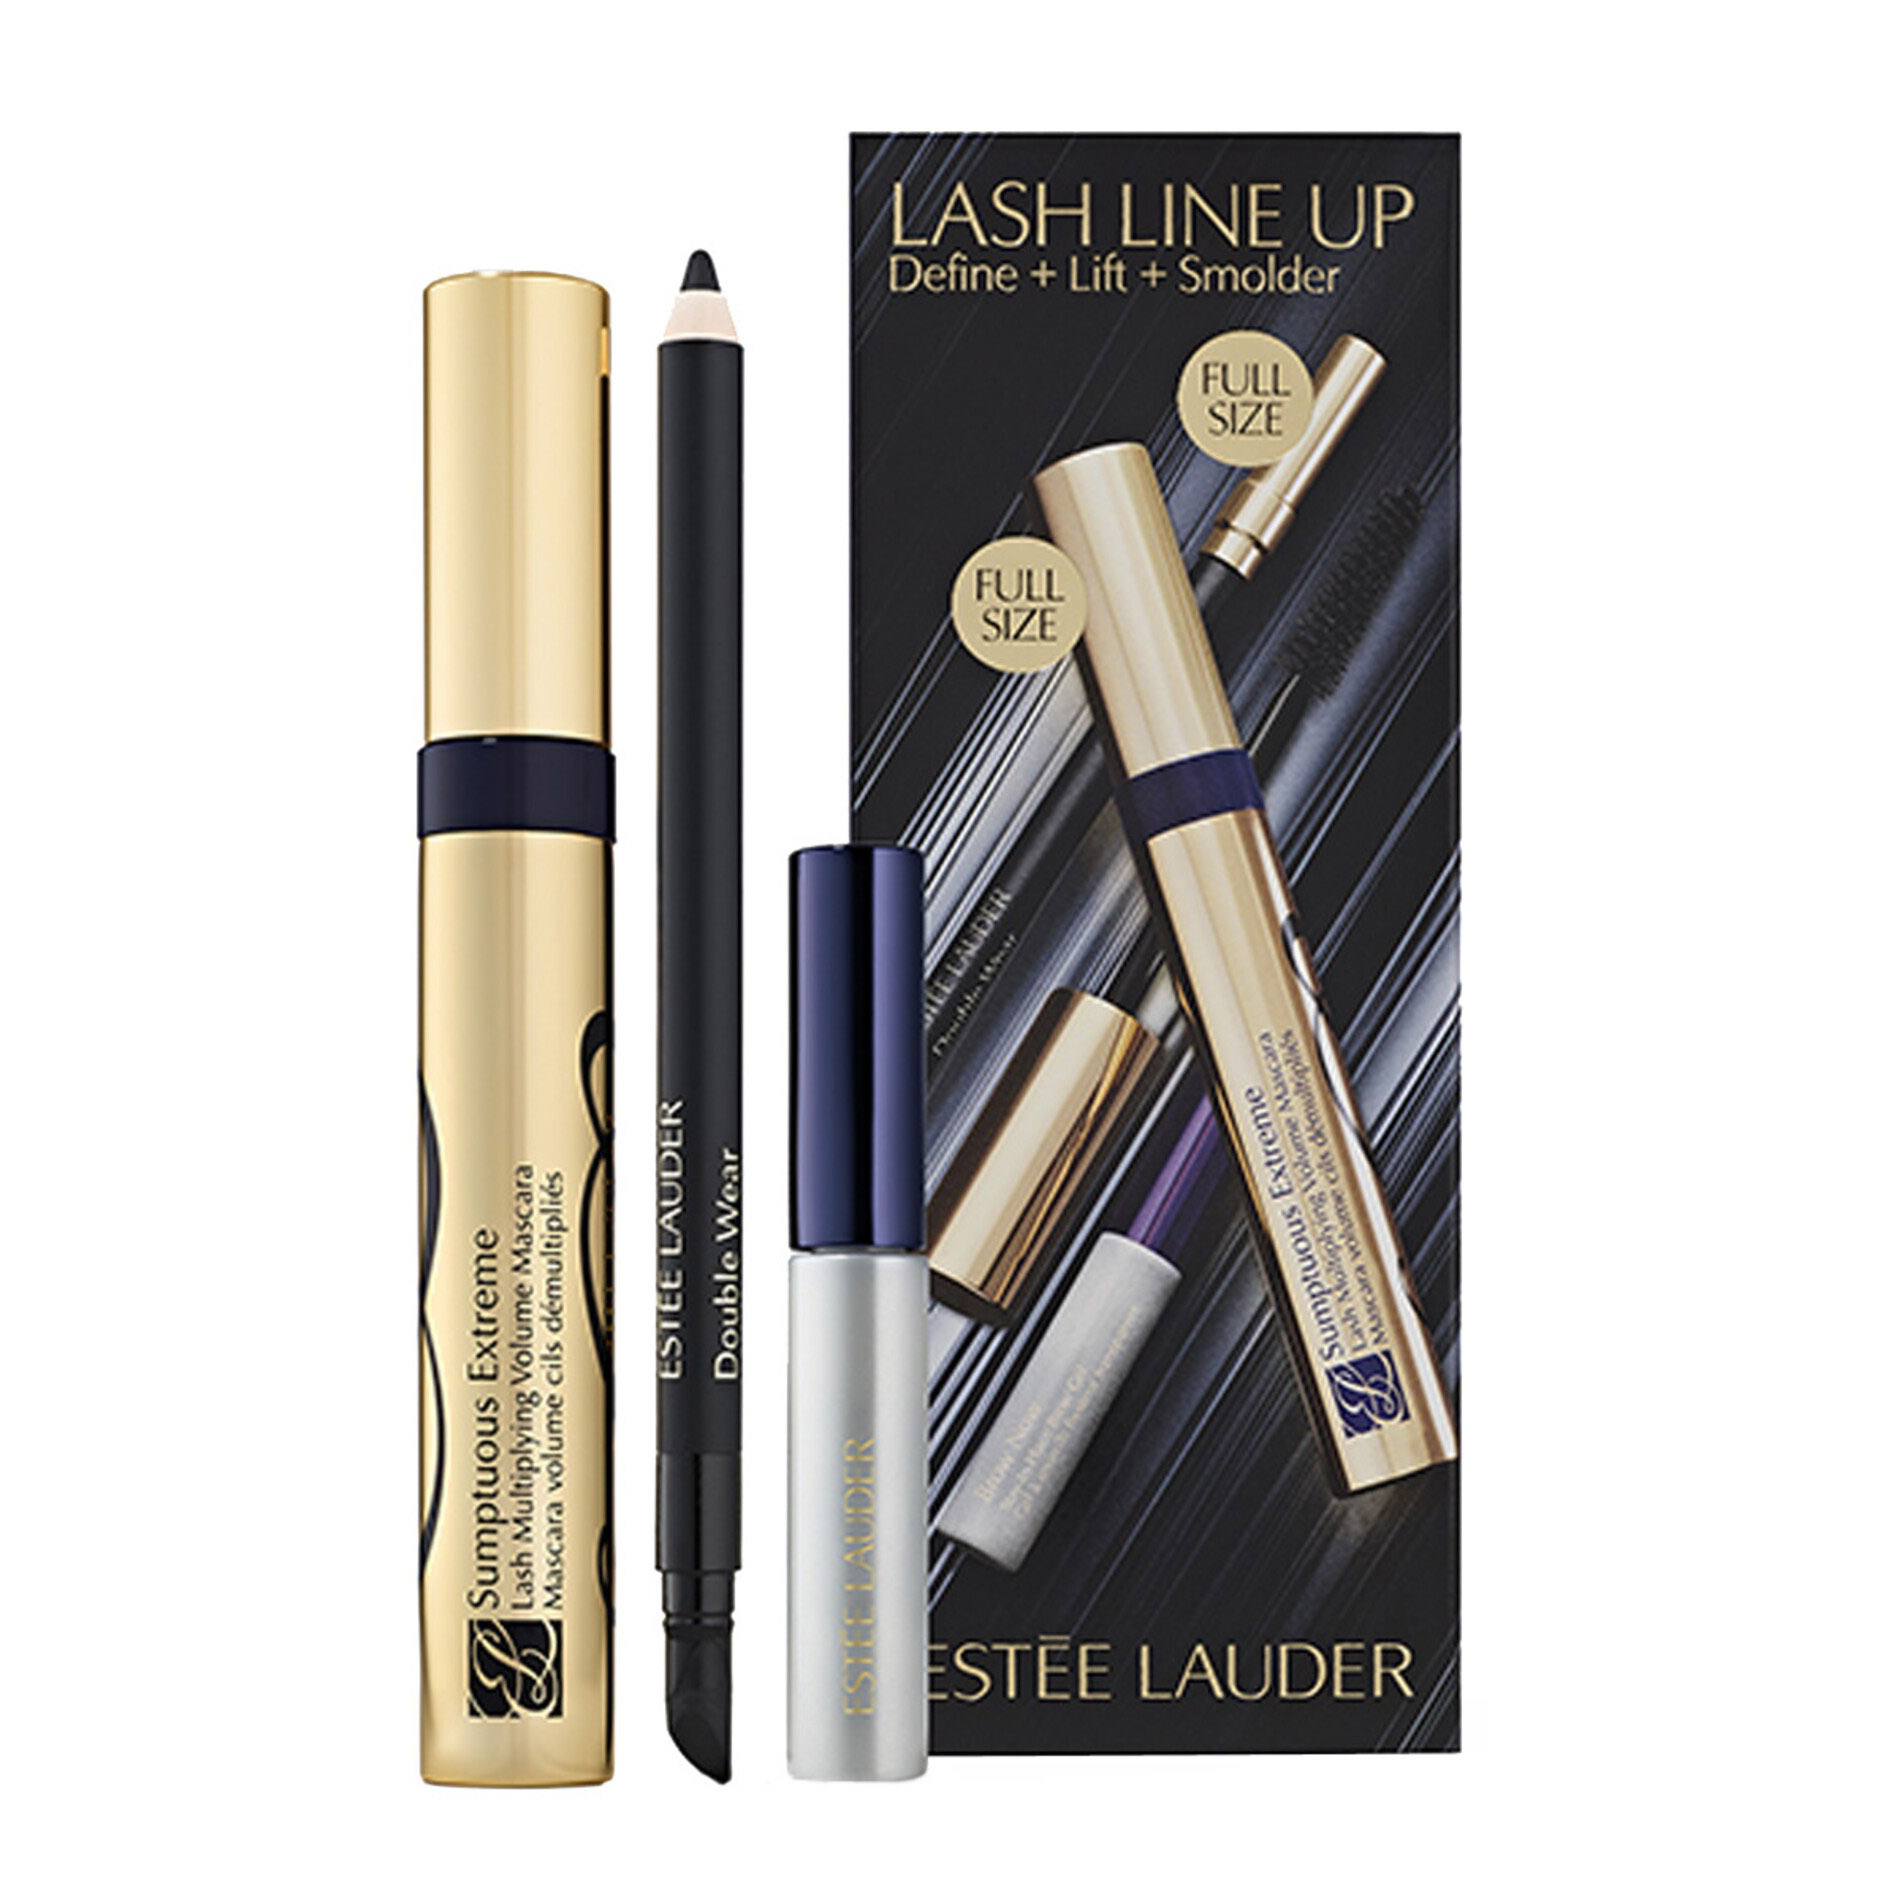 Подарочный набор Estee Lauder Lash Line Up Sumptuous Extreme Mascara Define, 3 предмета цена и фото